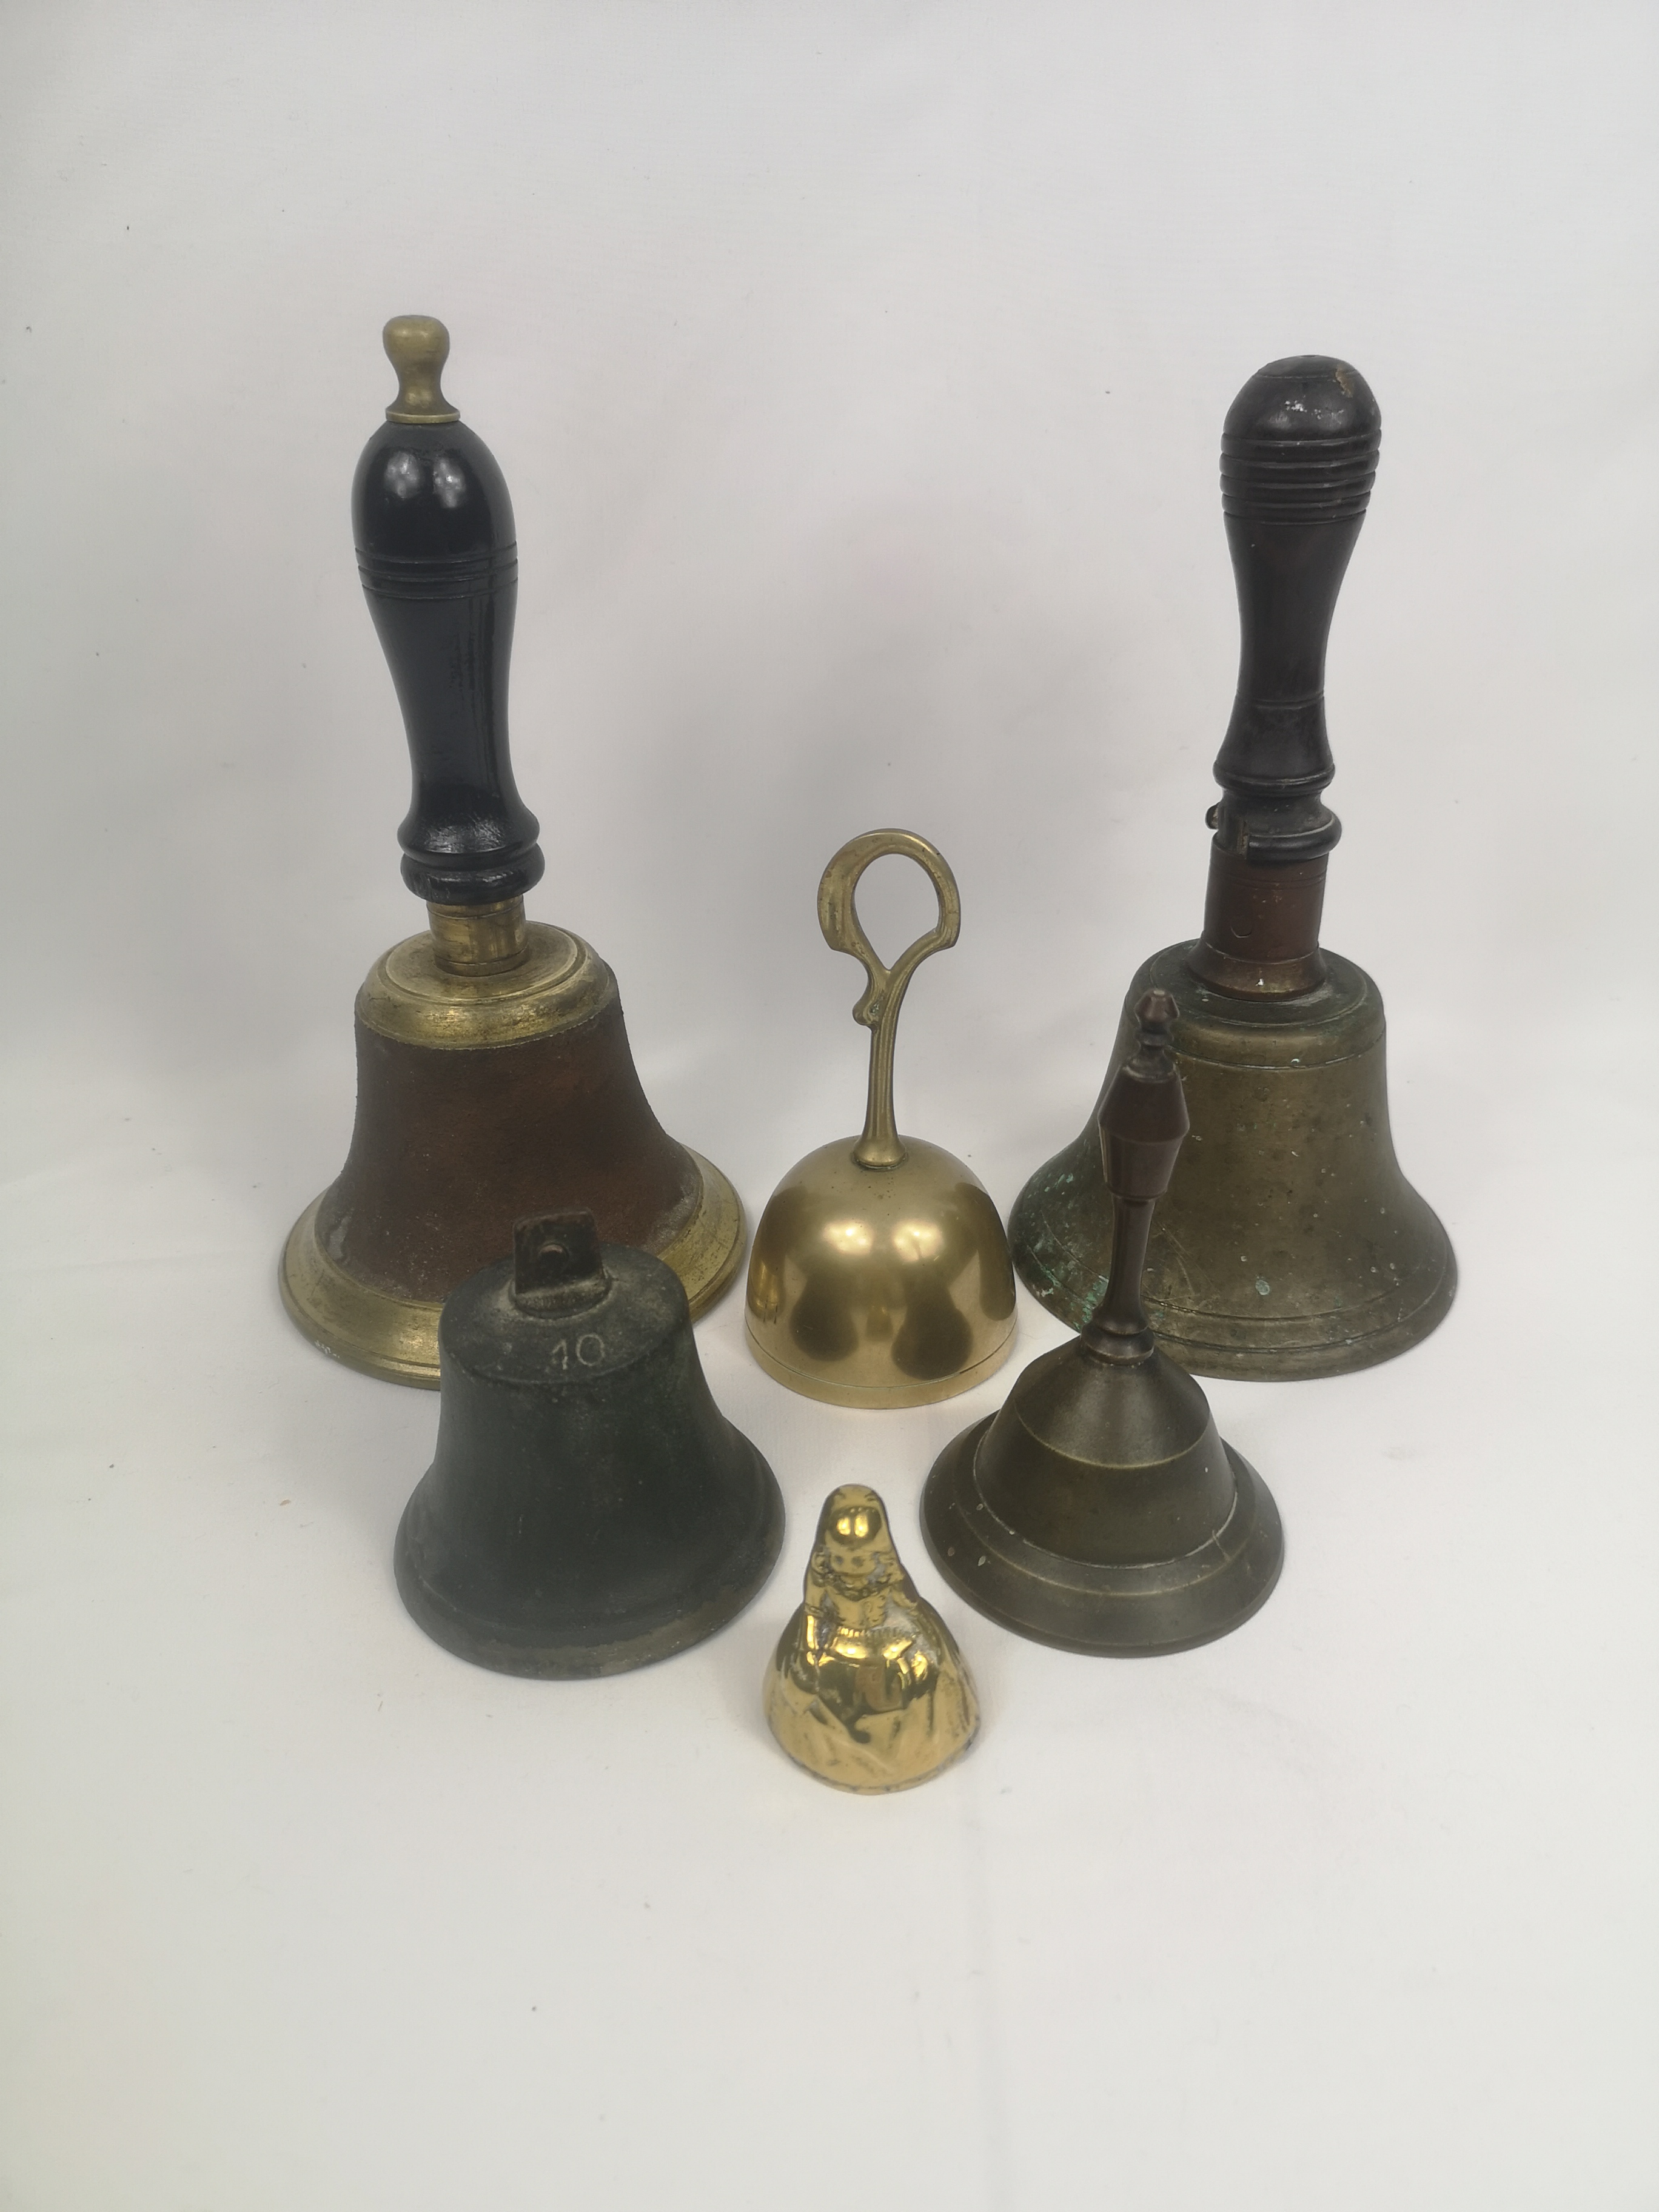 Four brass hand bells